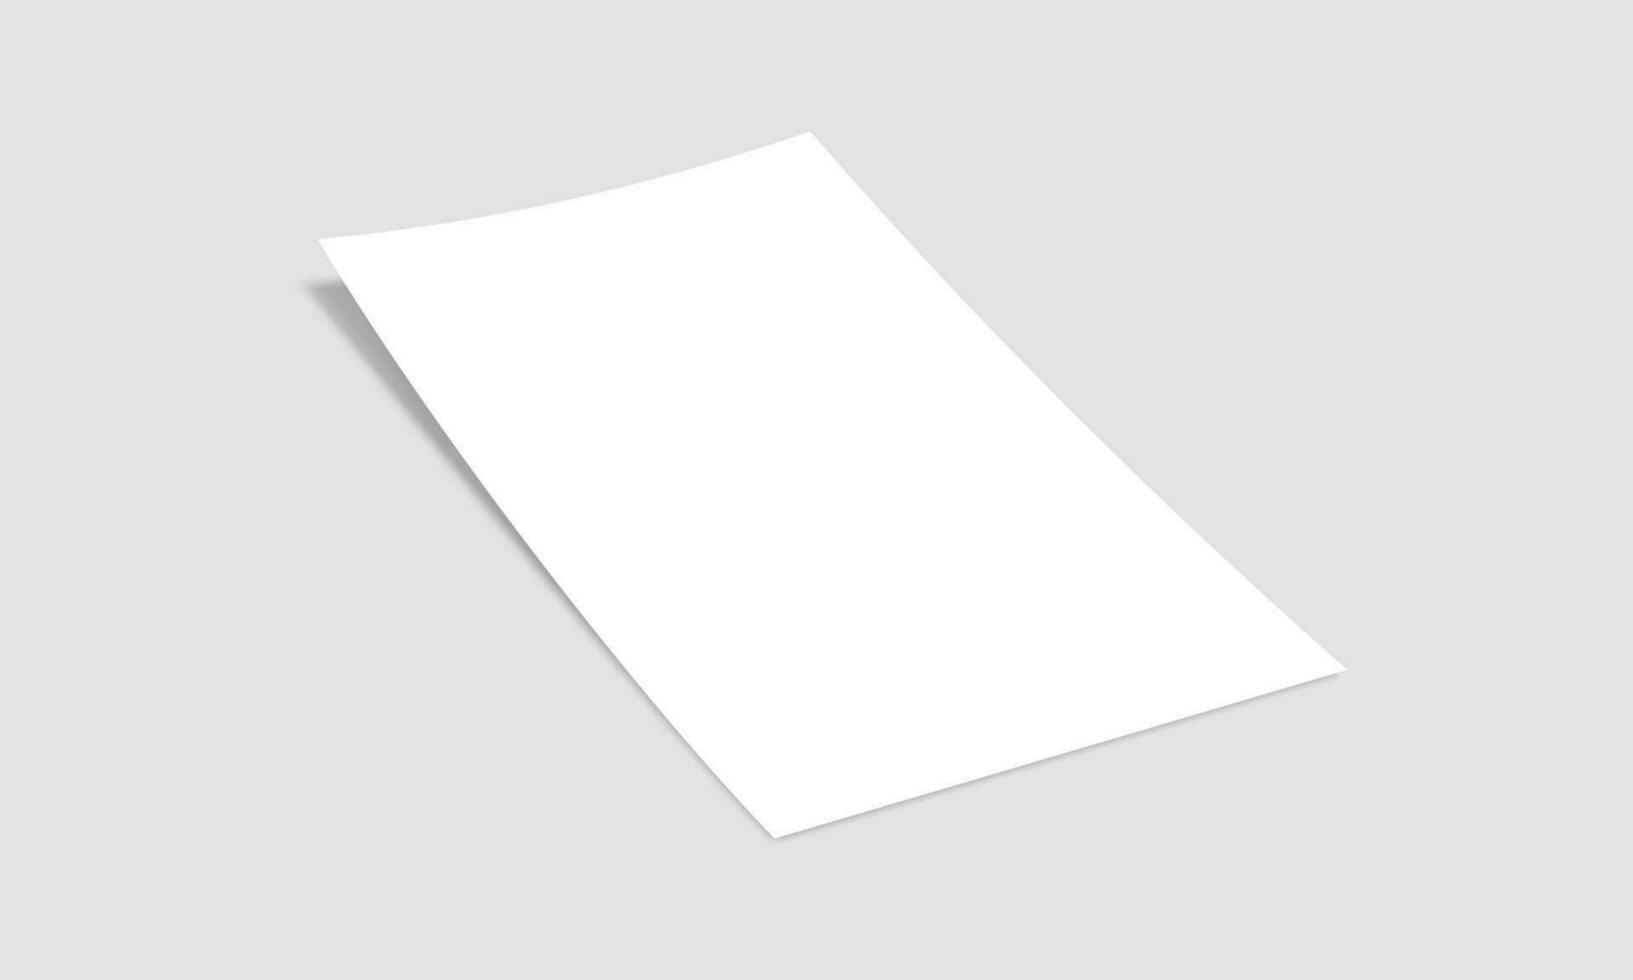 Vektor Weiß Blatt von Papier. realistisch leer a4 Format Papier Vorlage mit Schatten. Flyer, Abdeckung, Broschüre Attrappe, Lehrmodell, Simulation Design